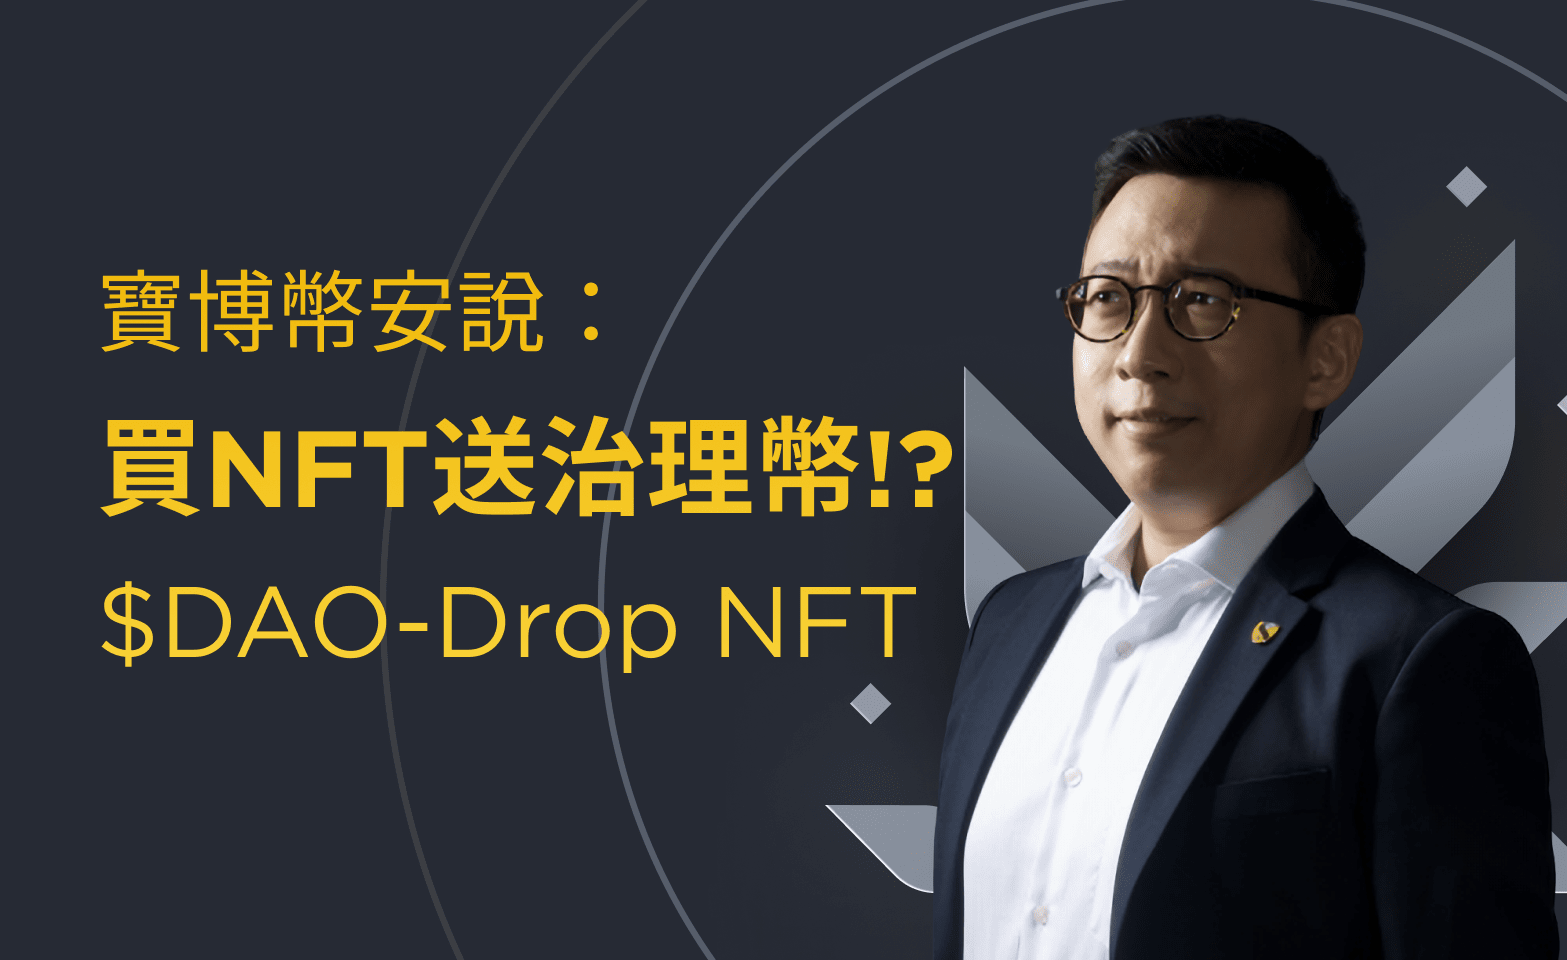 寶博幣安說：買NFT送治理代幣!? $DAO-Drop NFT